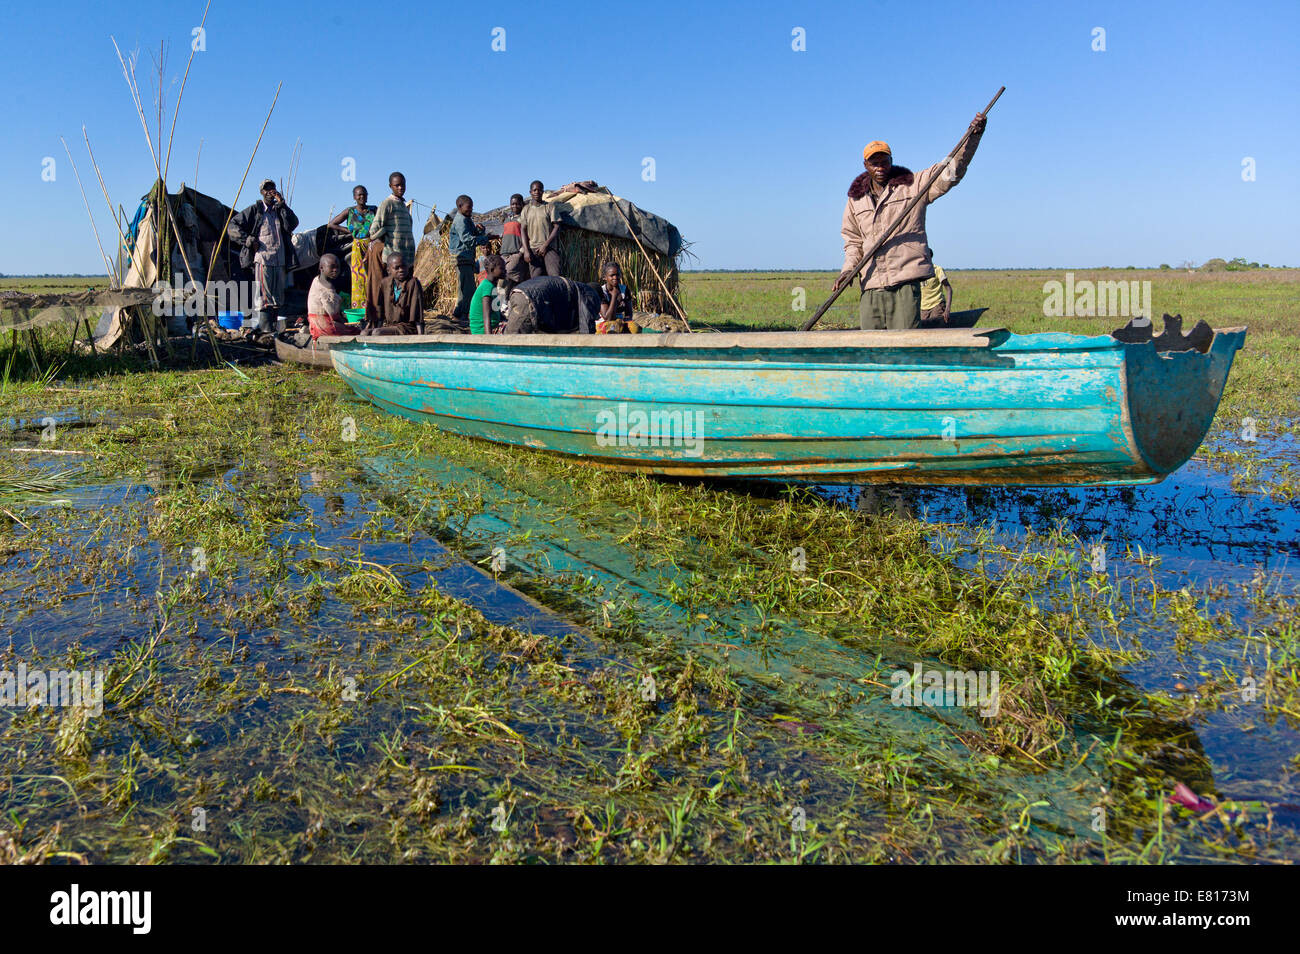 Les pêcheurs se préparent à sortir et vérifier les filets depuis un village de pêche dans les zones humides, la Zambie Bangweulu Banque D'Images